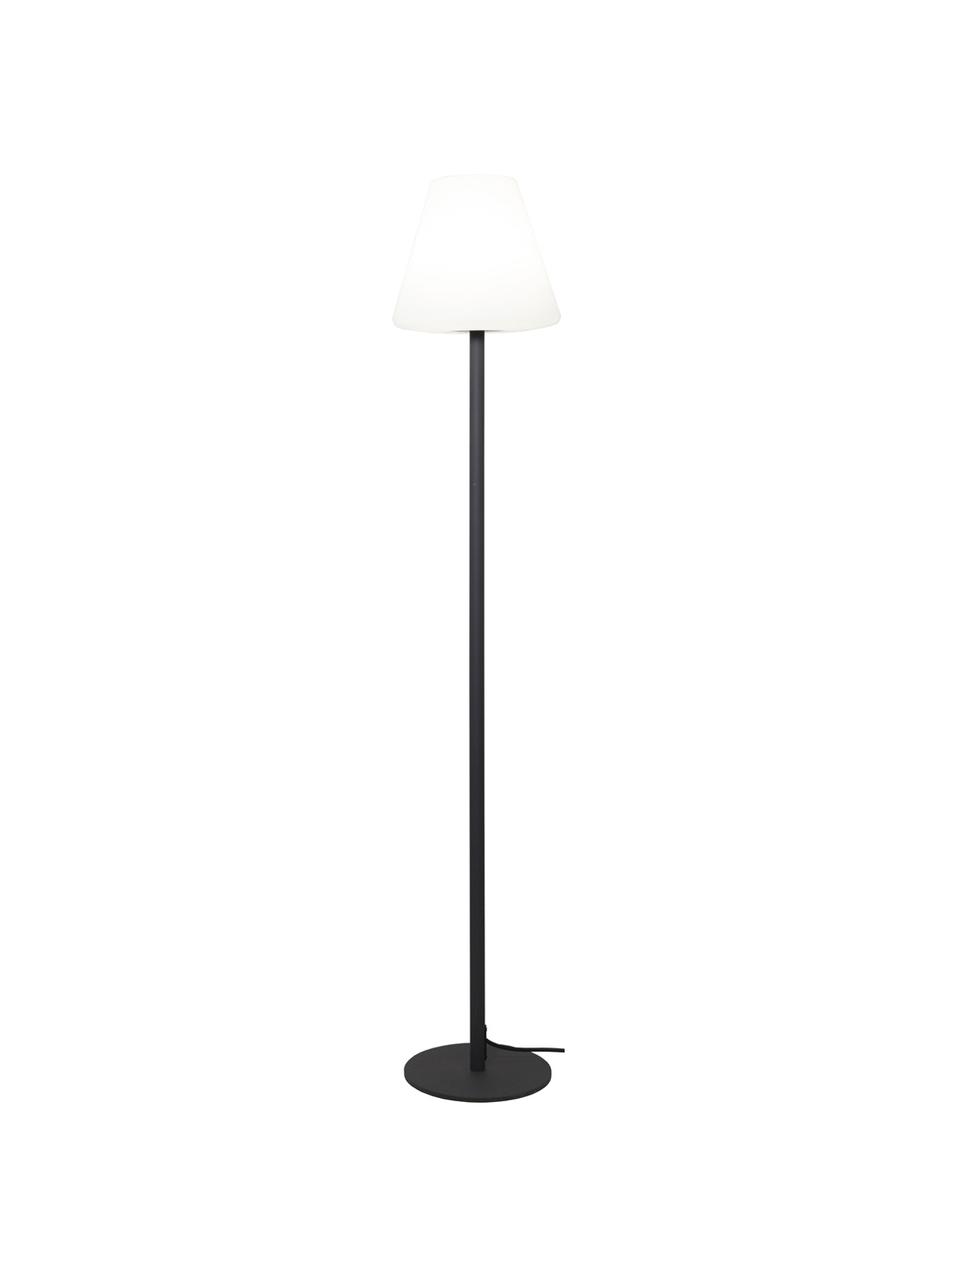 Venkovní stojací LED lampa se zástrčkou Gardenlight, Bílá, antracitová, Ø 28 cm, V 150 cm